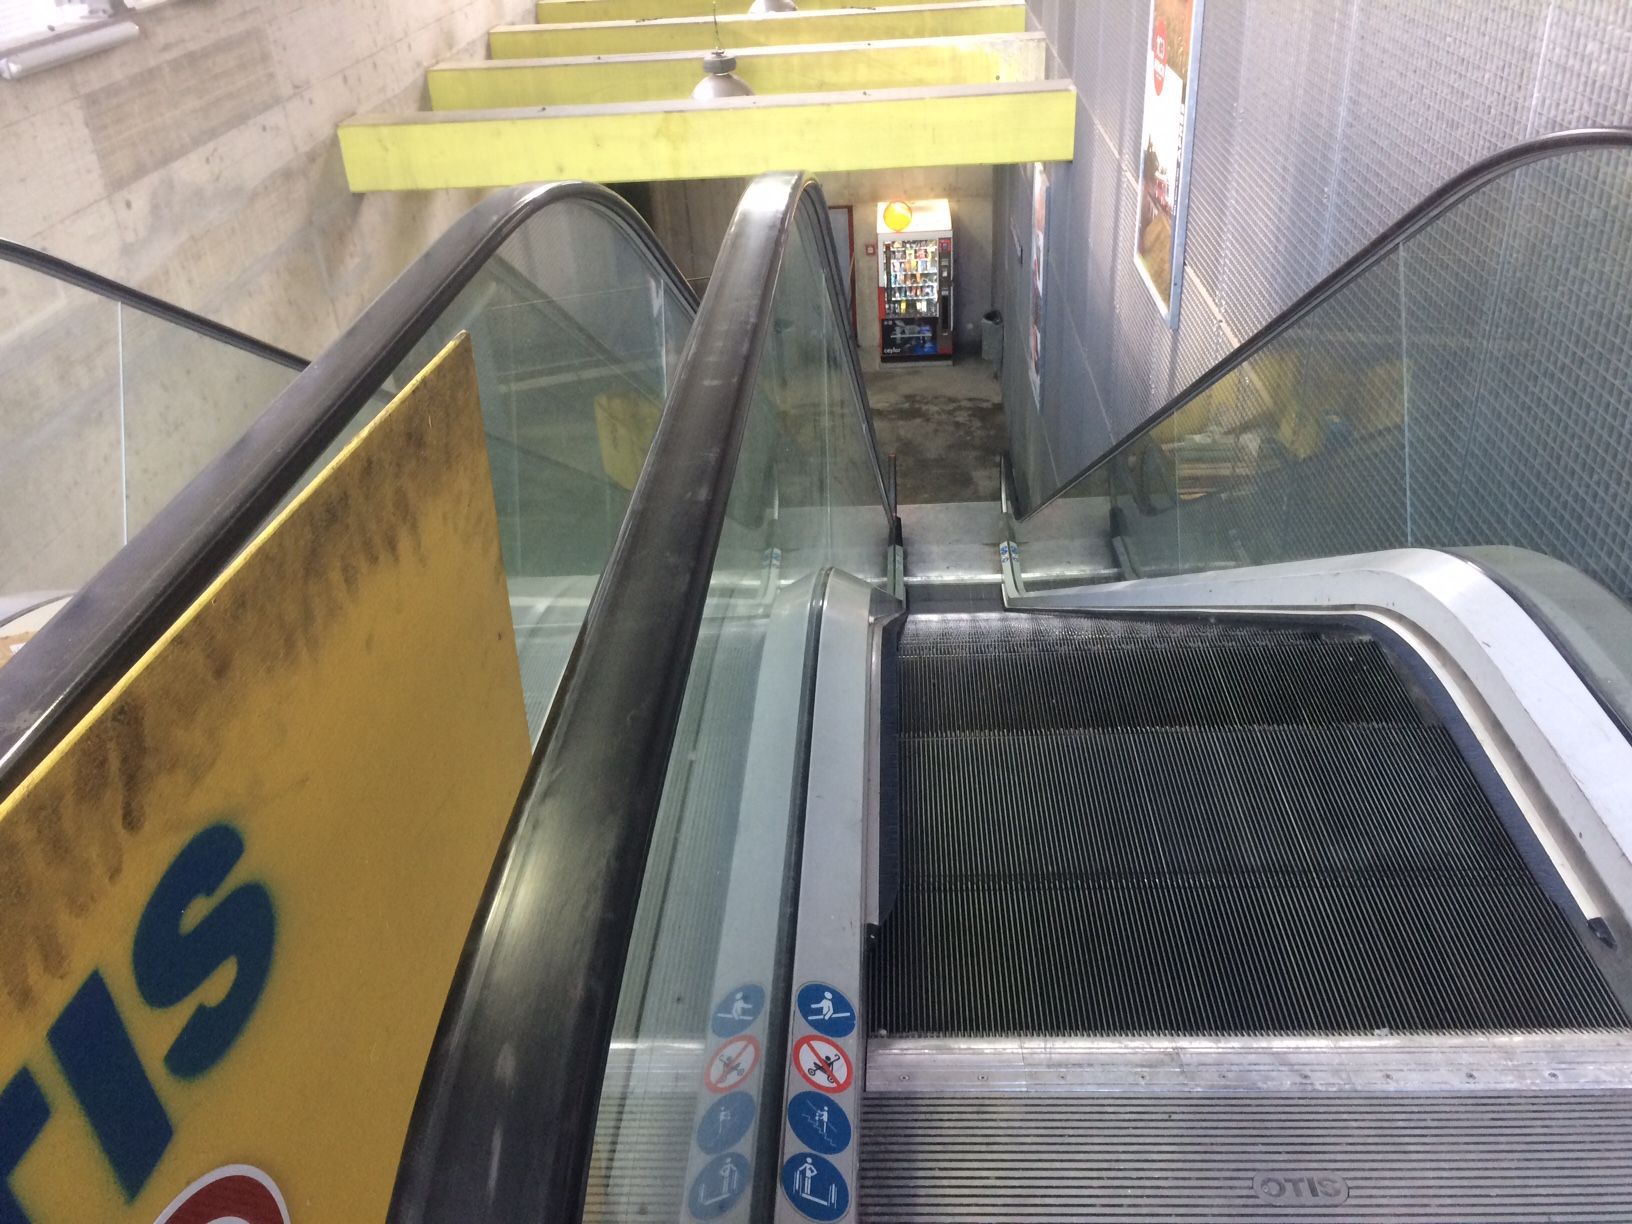 L'escalator montant est à nouveau disponible. 